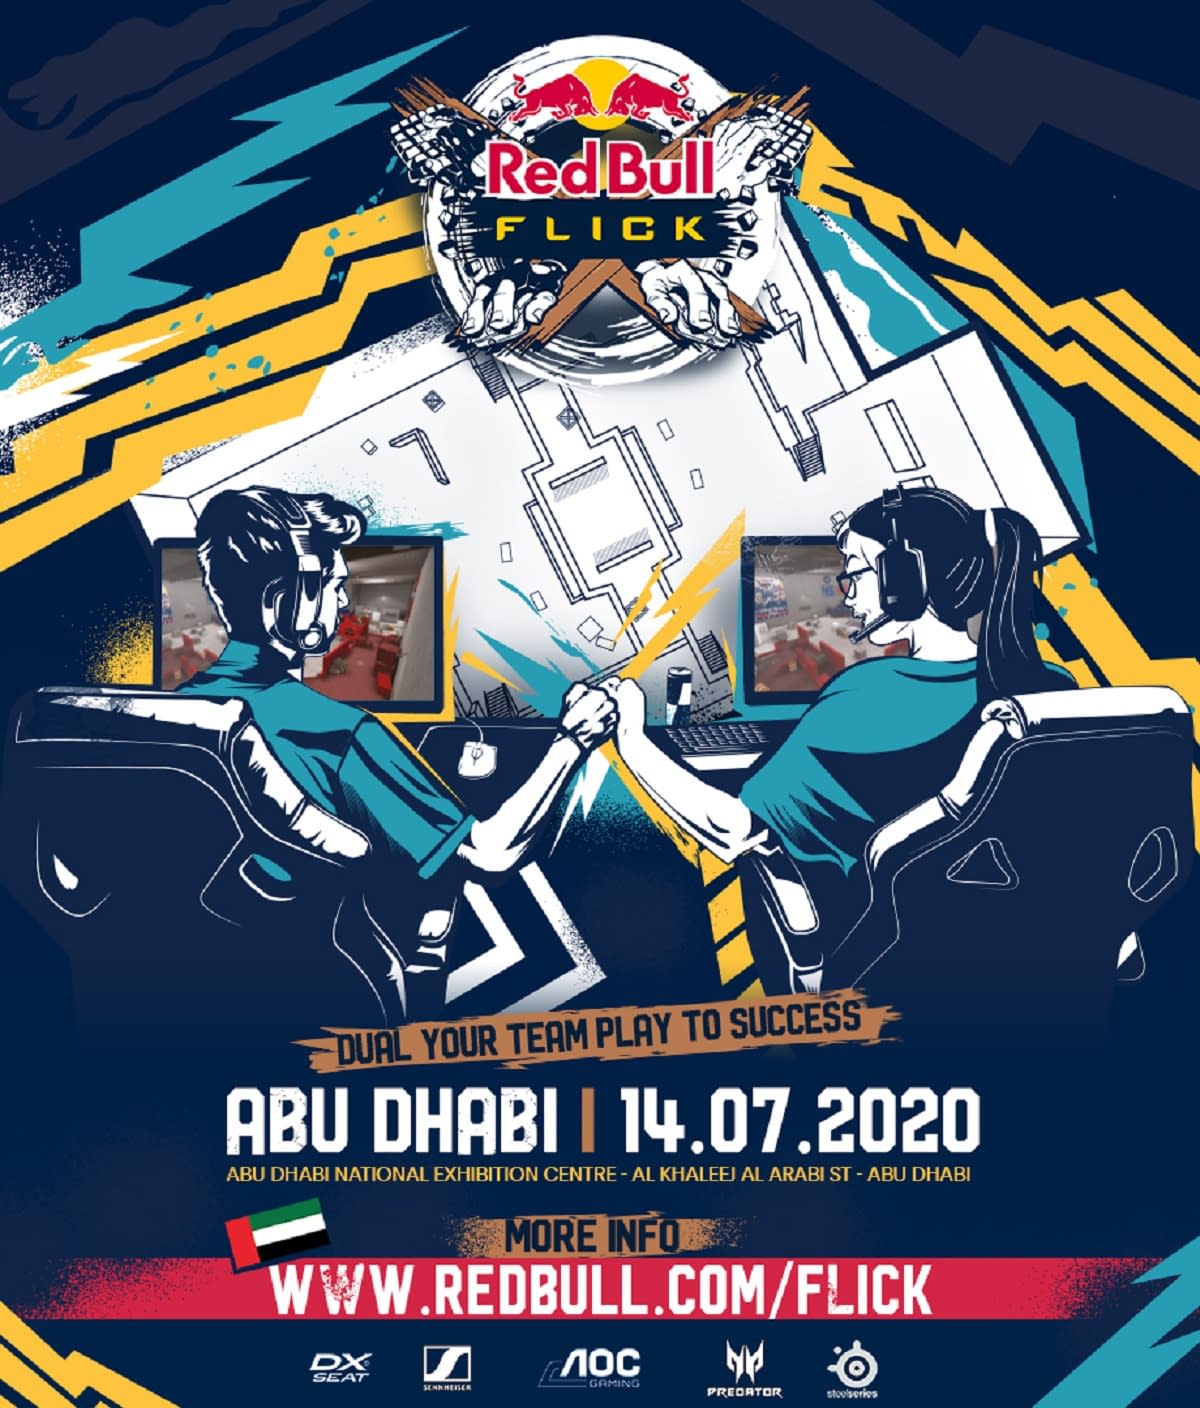 FACEIT & Red Bull Announce 2v2 CSGO Event Red Bull Flick